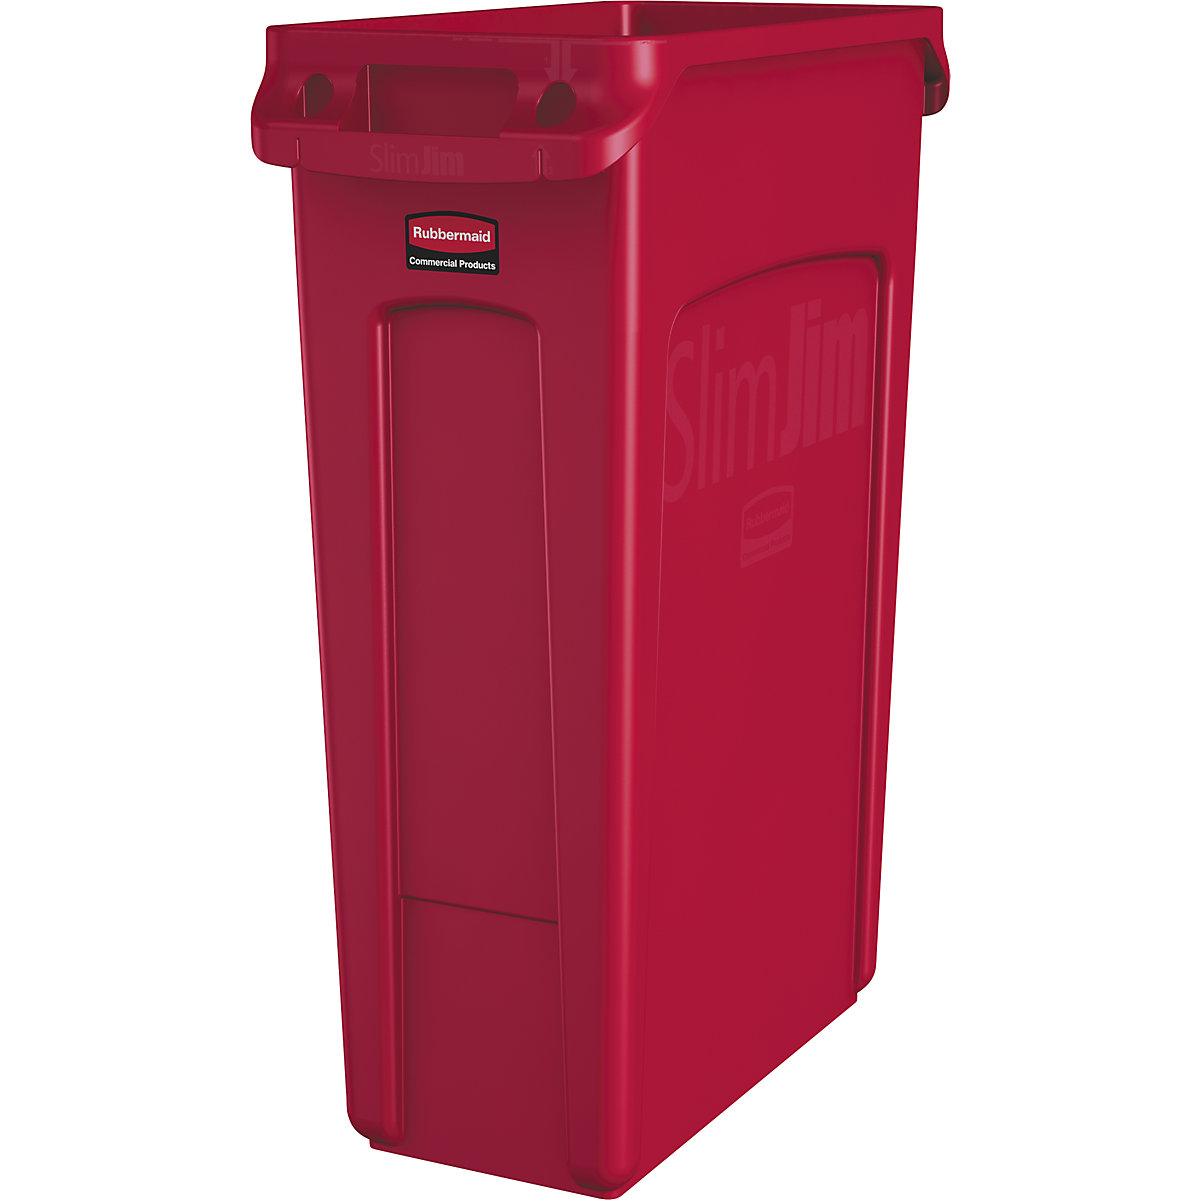 Coletor de materiais recicláveis/balde do lixo SLIM JIM® – Rubbermaid